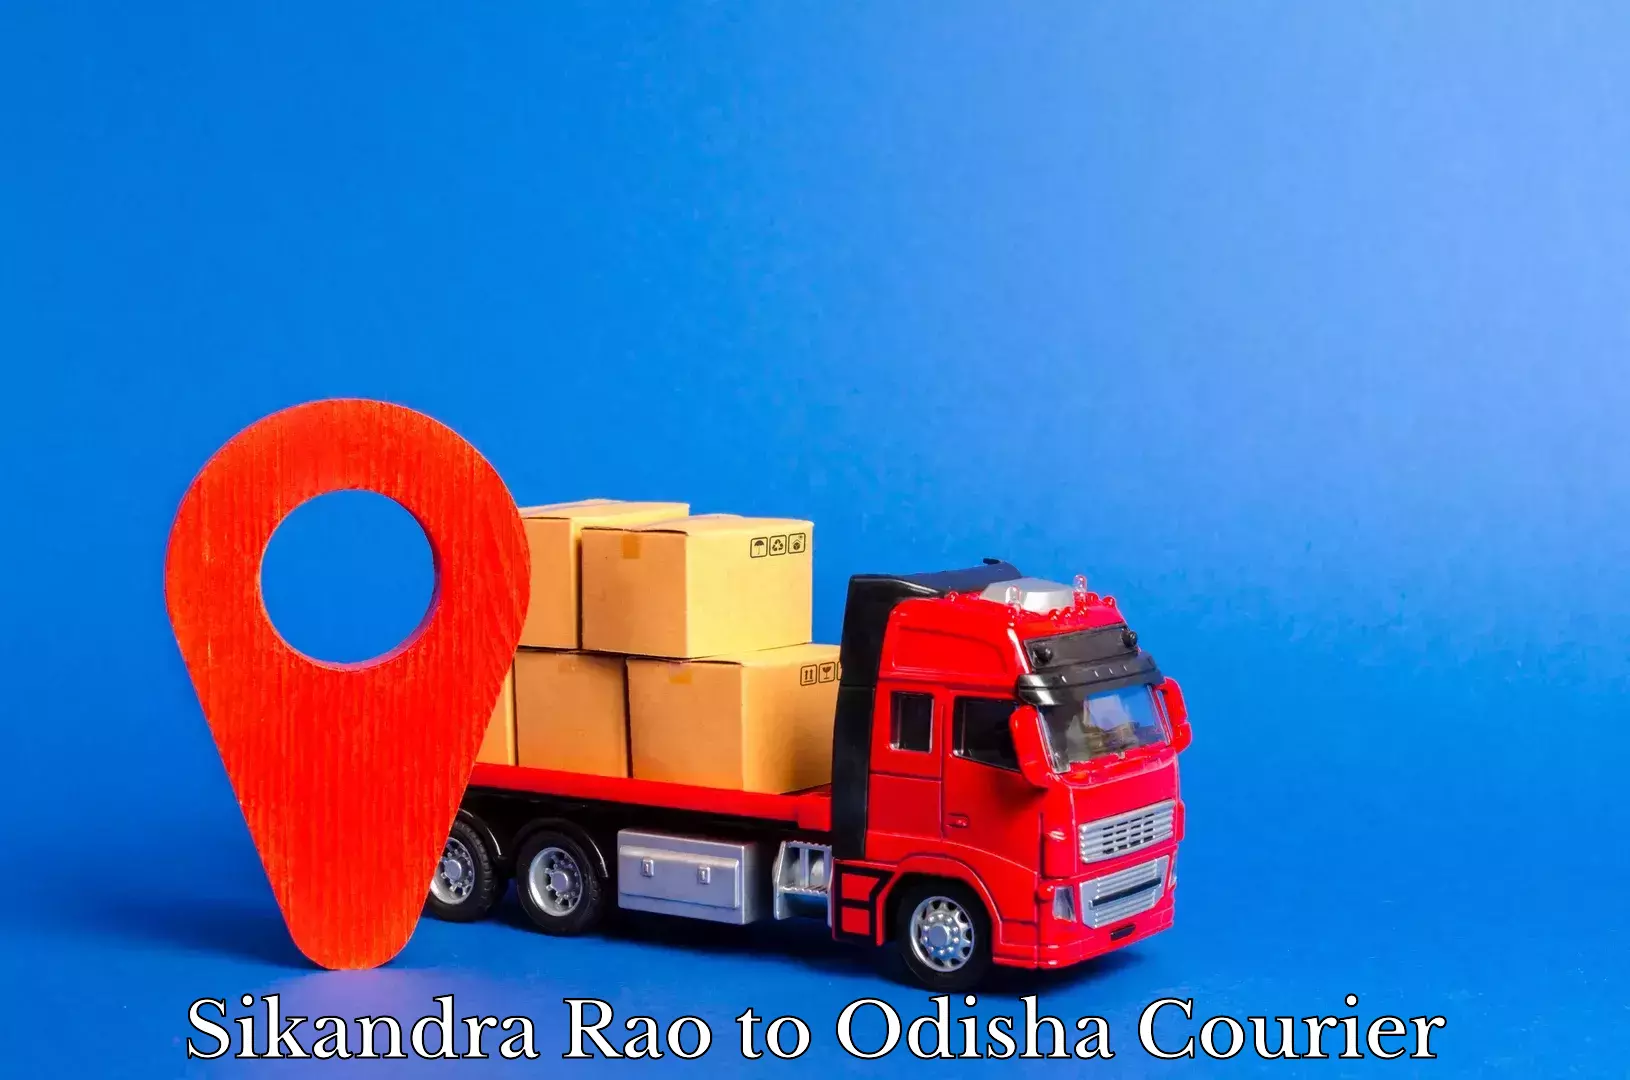 24/7 courier service in Sikandra Rao to Odisha